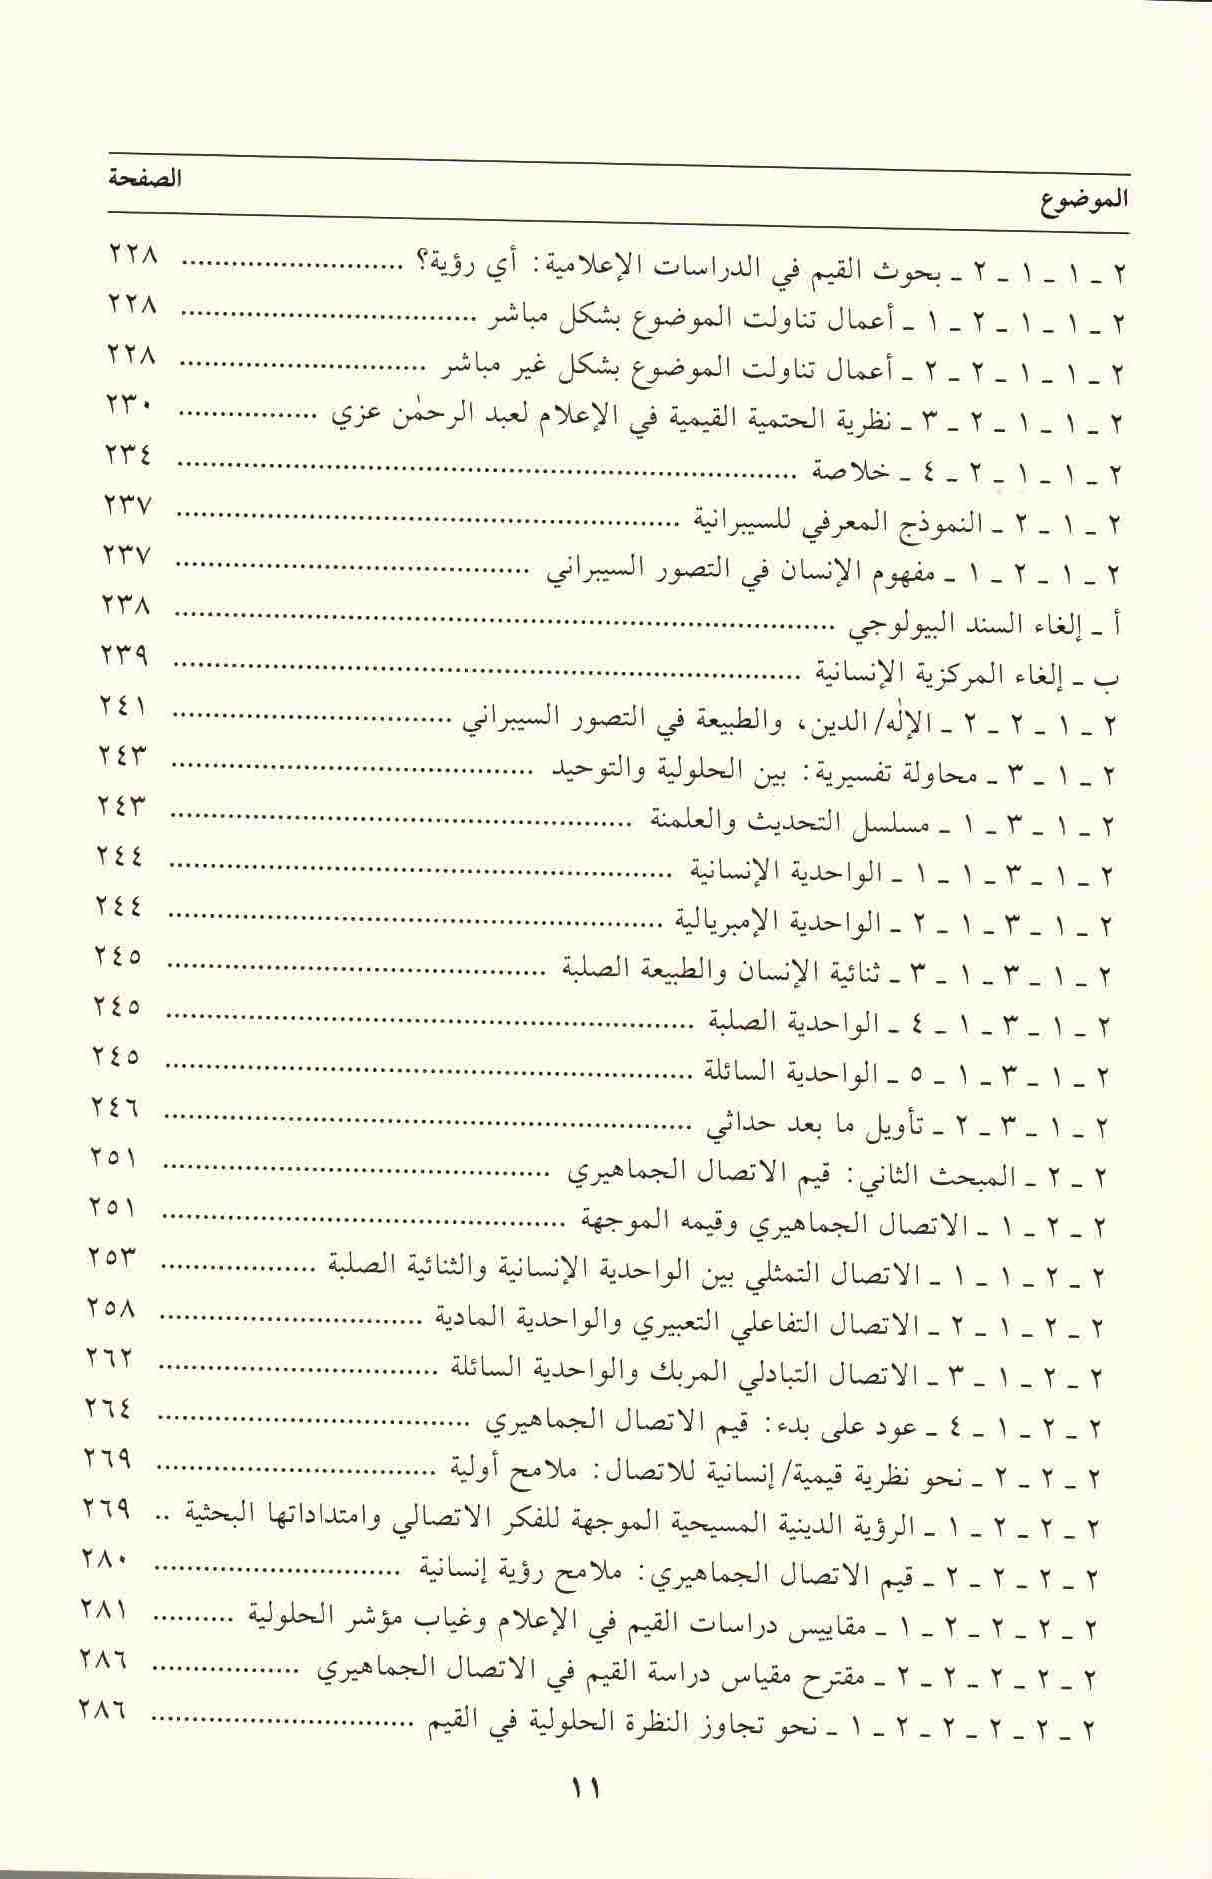 ص 11محتويات كتاب الاتصال الجماهيري وسؤال القيم